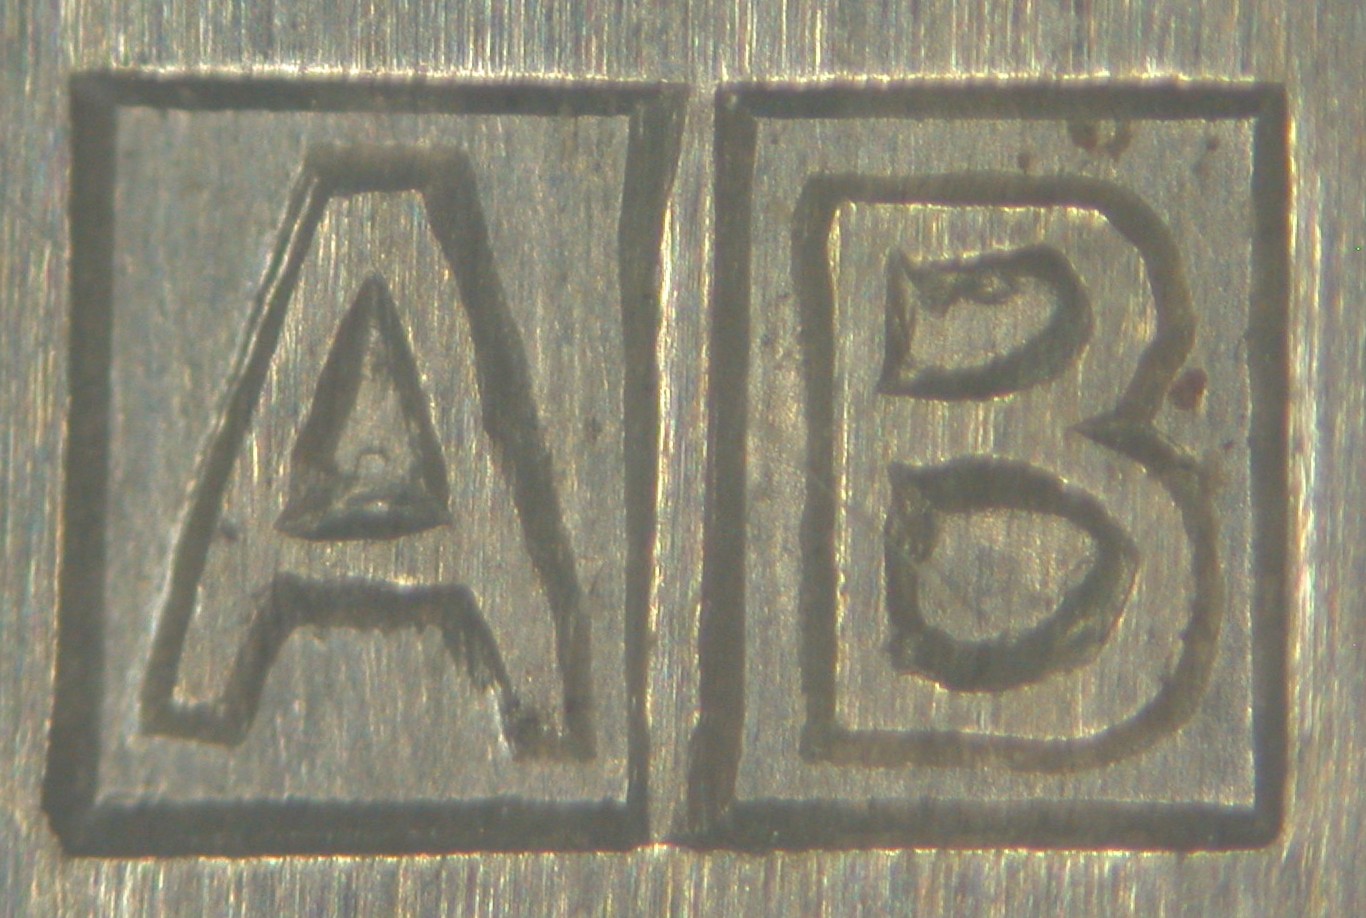 Przykład znaku imiennego: prostokąt podzielony pionowo na pół; po lewej wielka litera A, po prawej wielka litera B